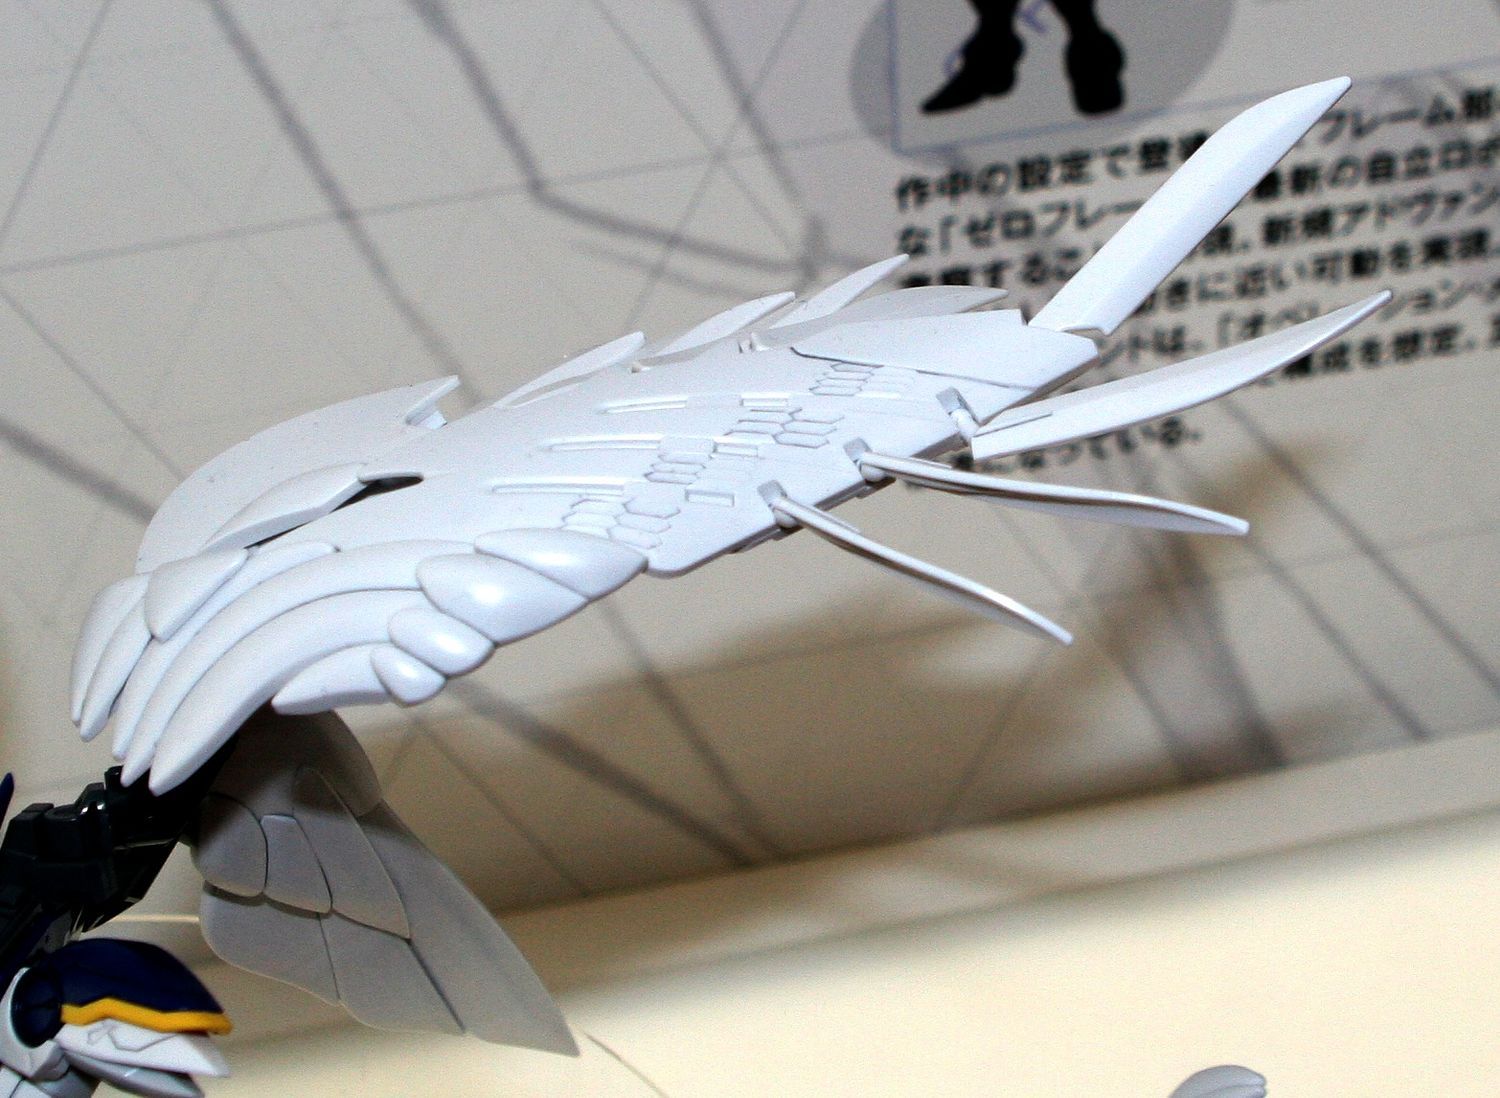 RG Gundam Wing Zero EW 1/144 - gundam-store.dk